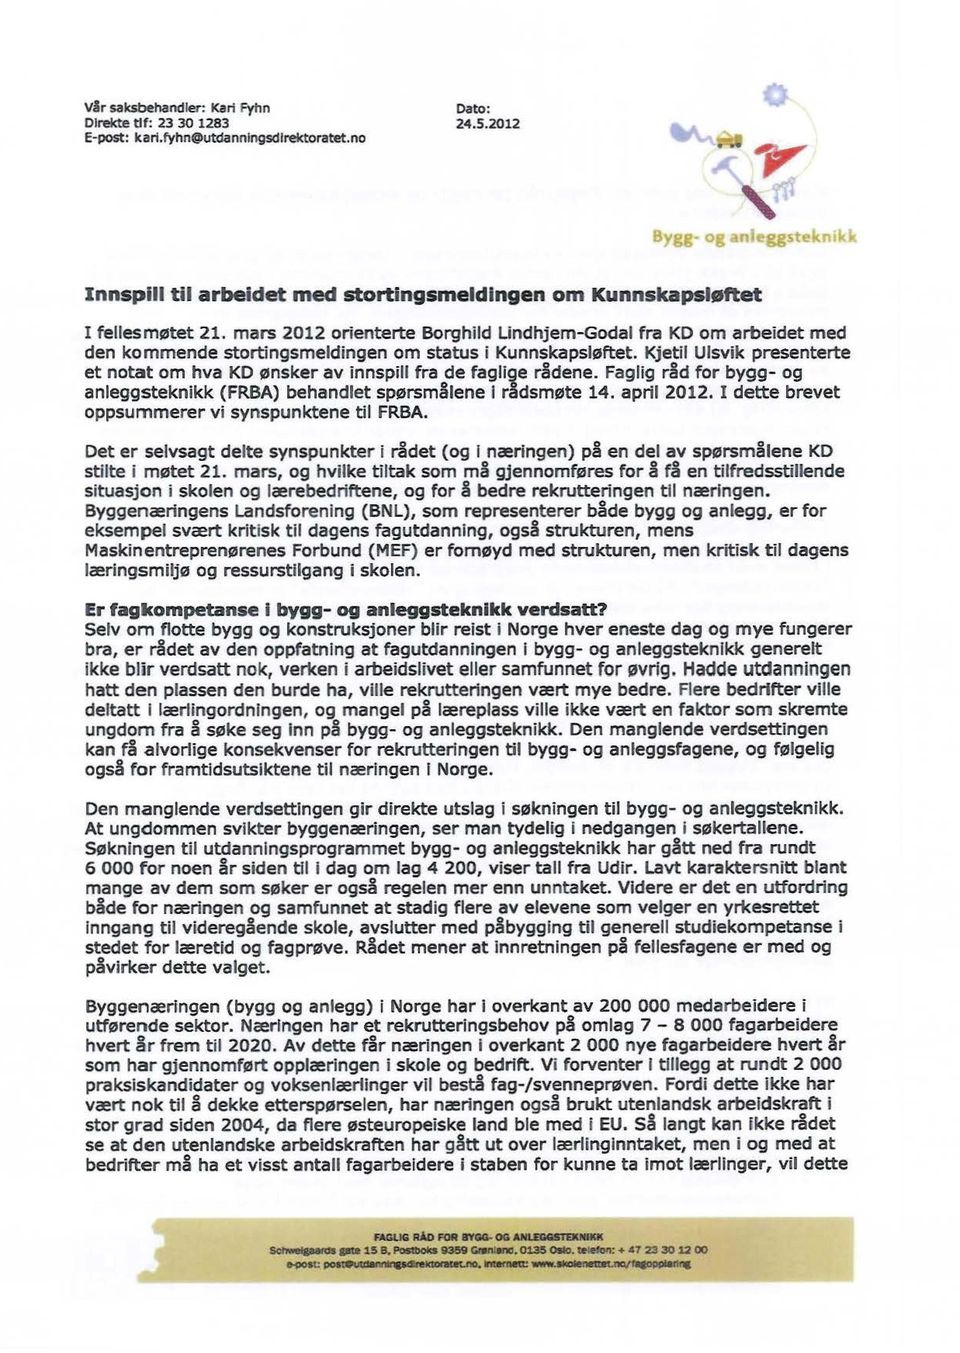 mars 2012 orienterte Borghild Lindhjem-Godal fra KD om arbeidet med den kommende stortingsmeldingen om status i Kunnskapsløftet.